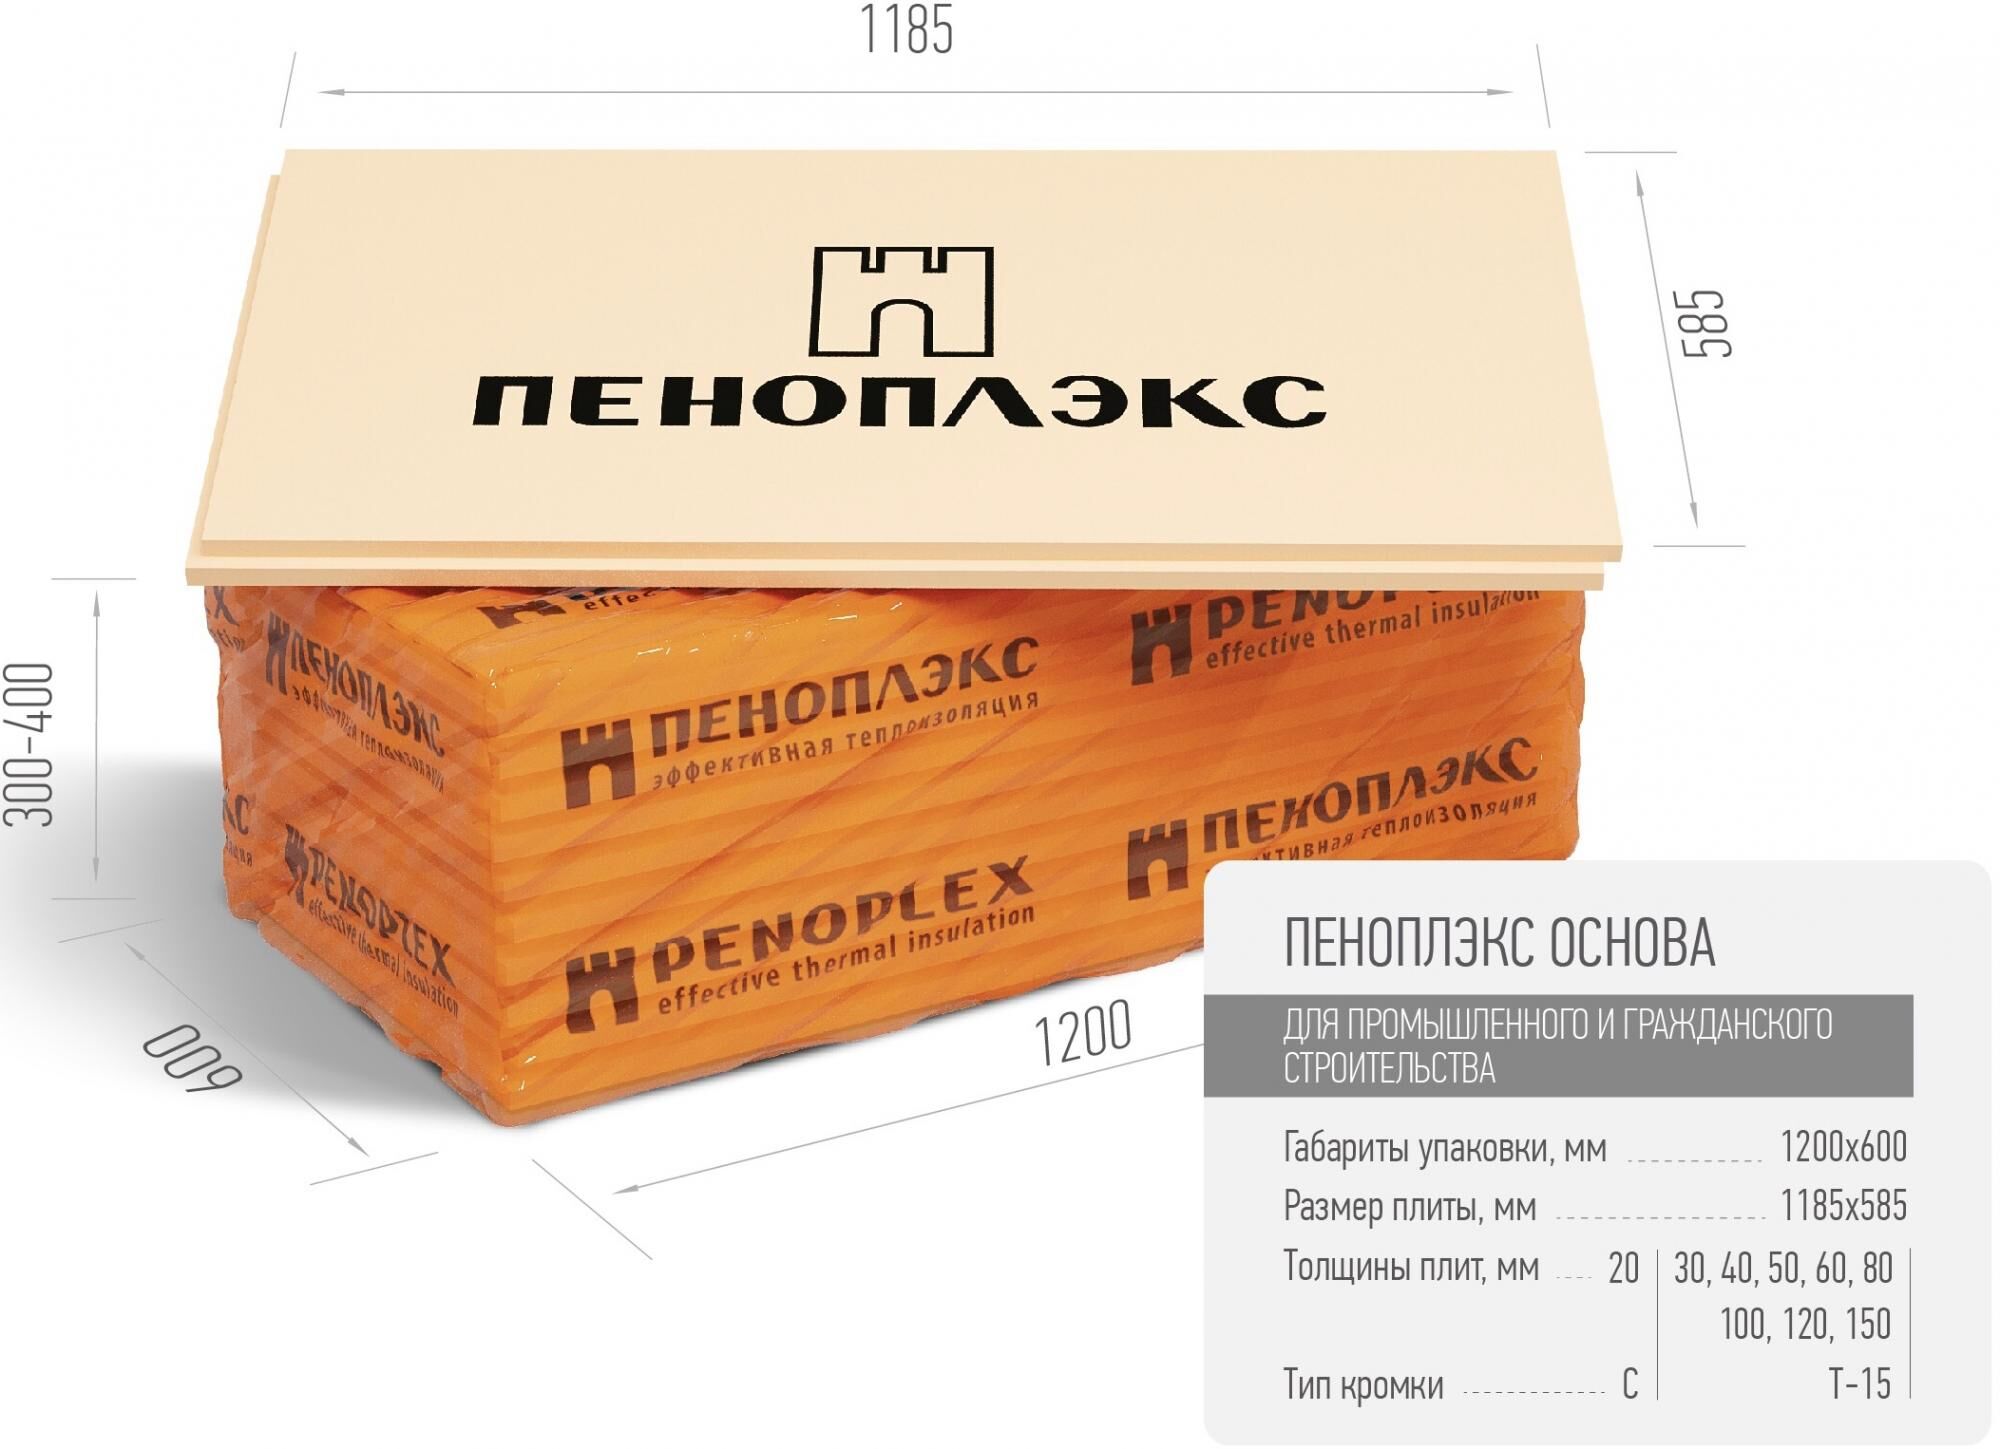 Экструзионный пенополистирол ПЕНОПЛЭКС ОСНОВА ® 20 мм Пеноплэкс